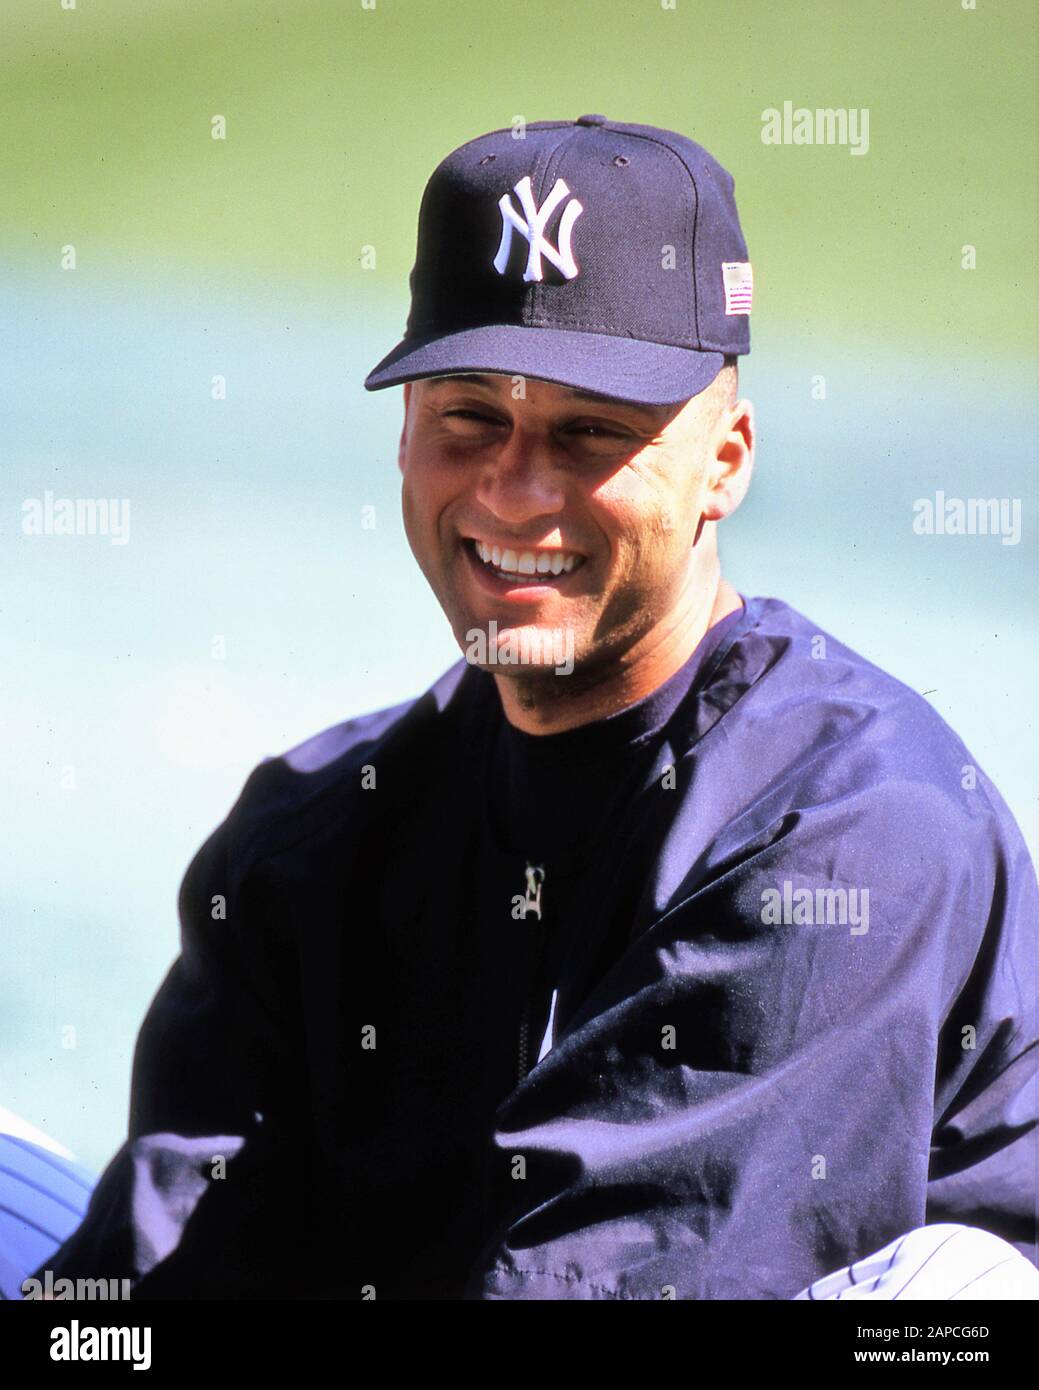 Derek Jeter ha trascorso l'intera carriera di 20 anni in MLB con i New York Yankees. È stato eletto alla Baseball Hall of Fame come parte della sua classe del 2020 Foto Stock